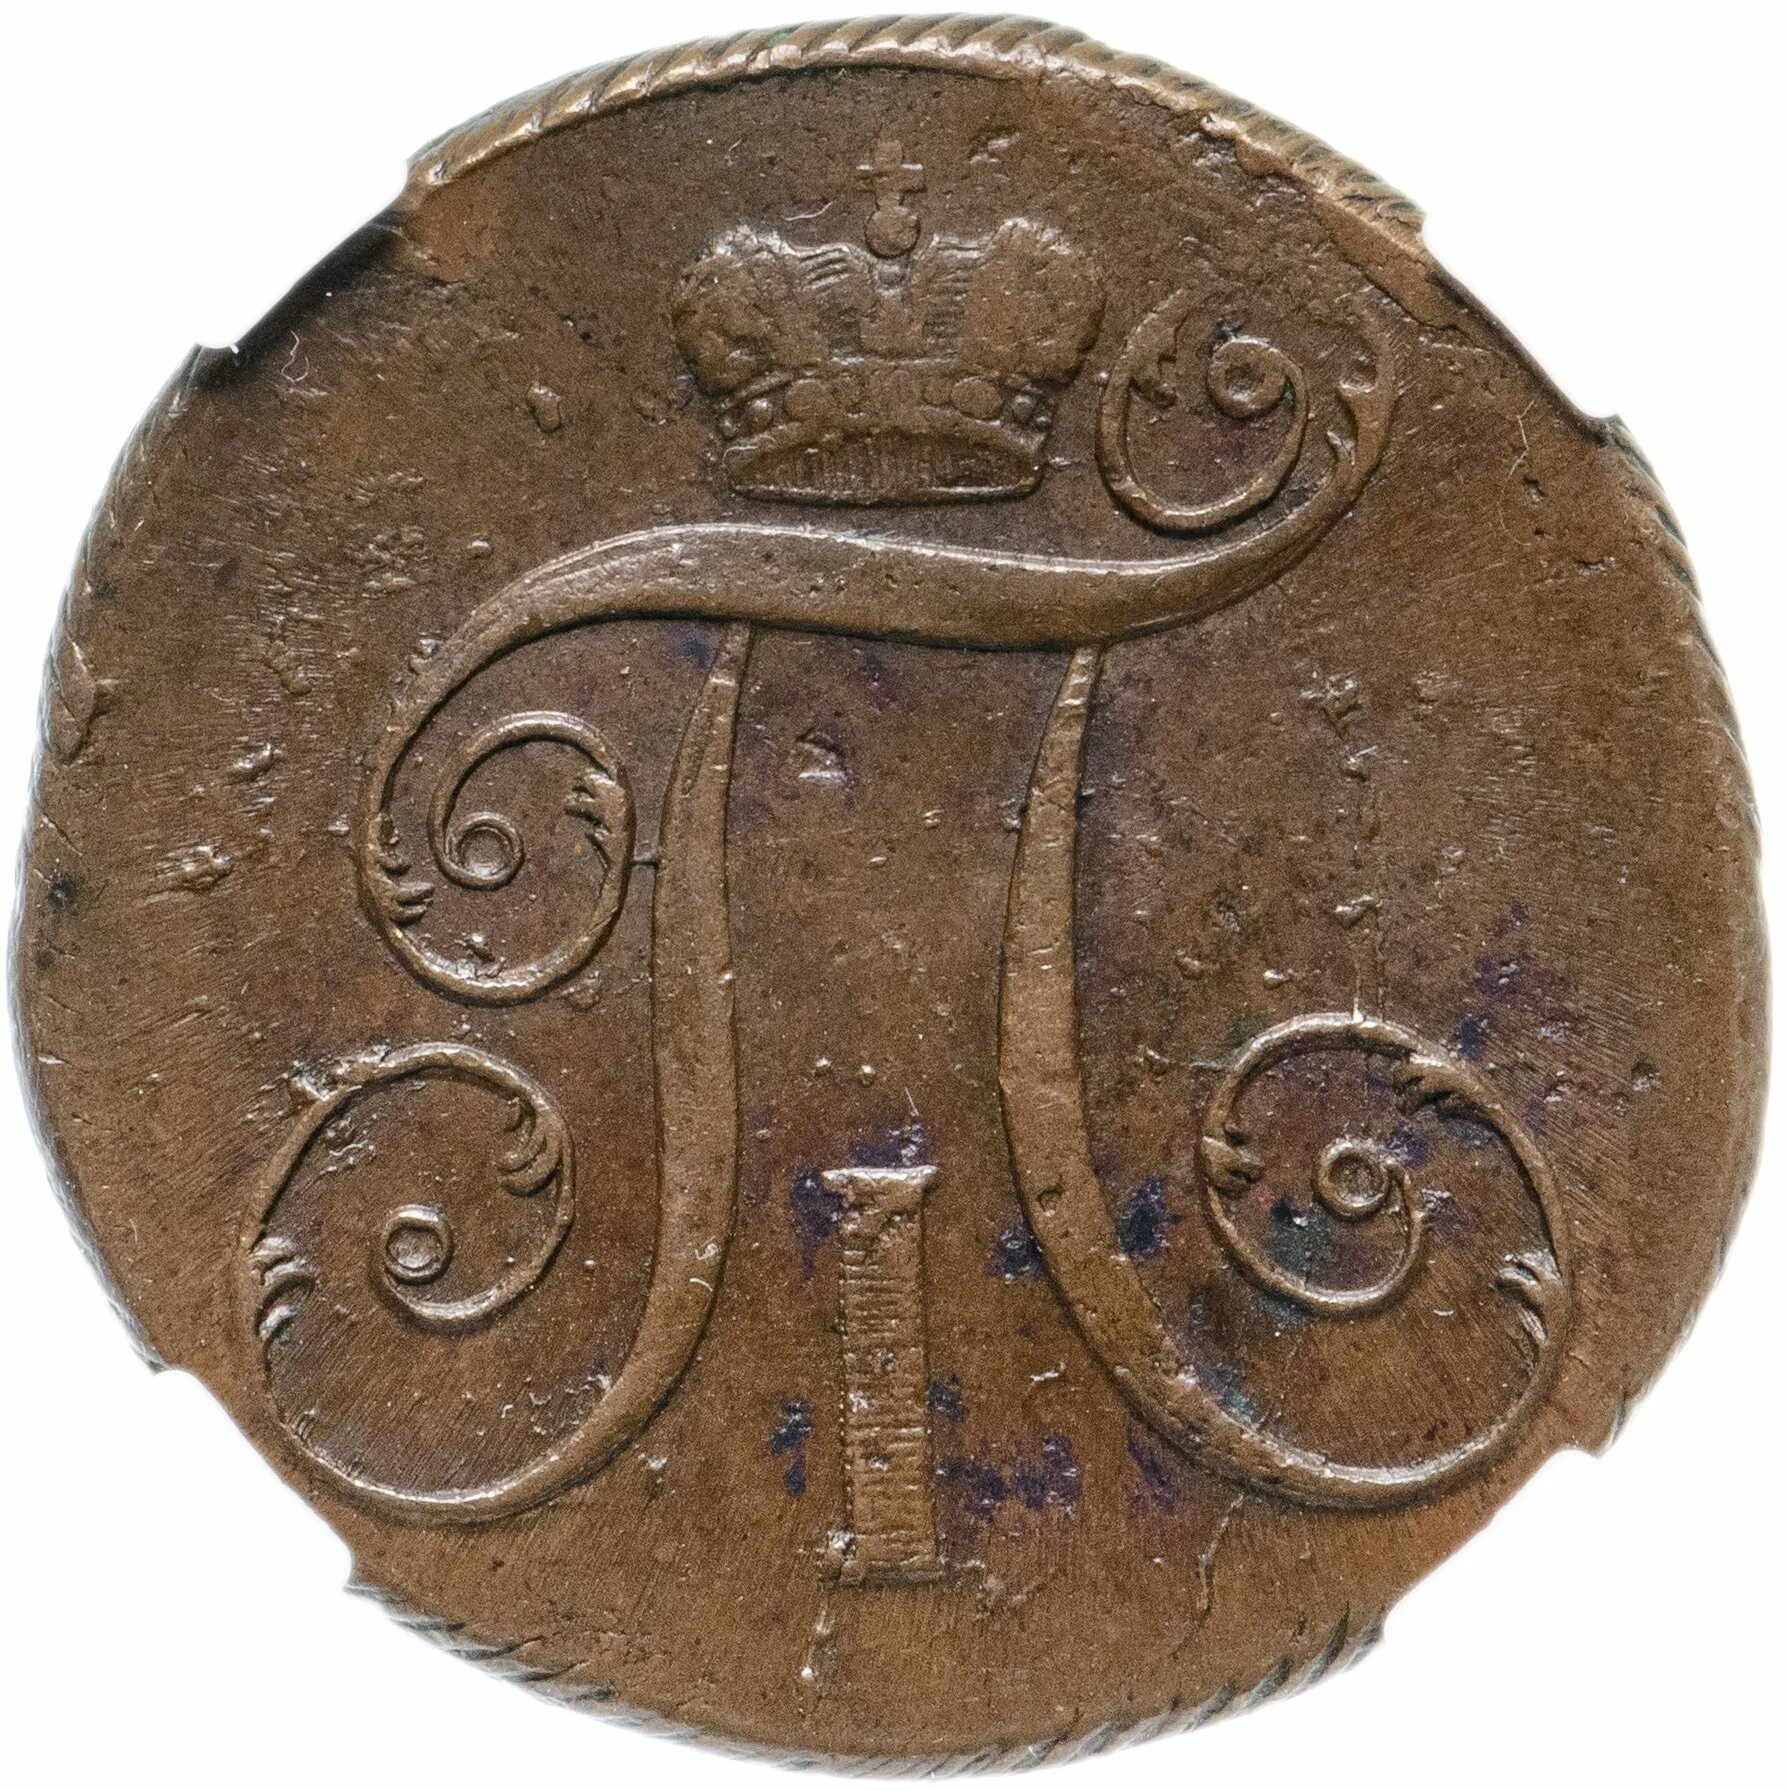 2 Копейки 1800. Царская монета 2 коп 1800 года. Медные монеты 1800.